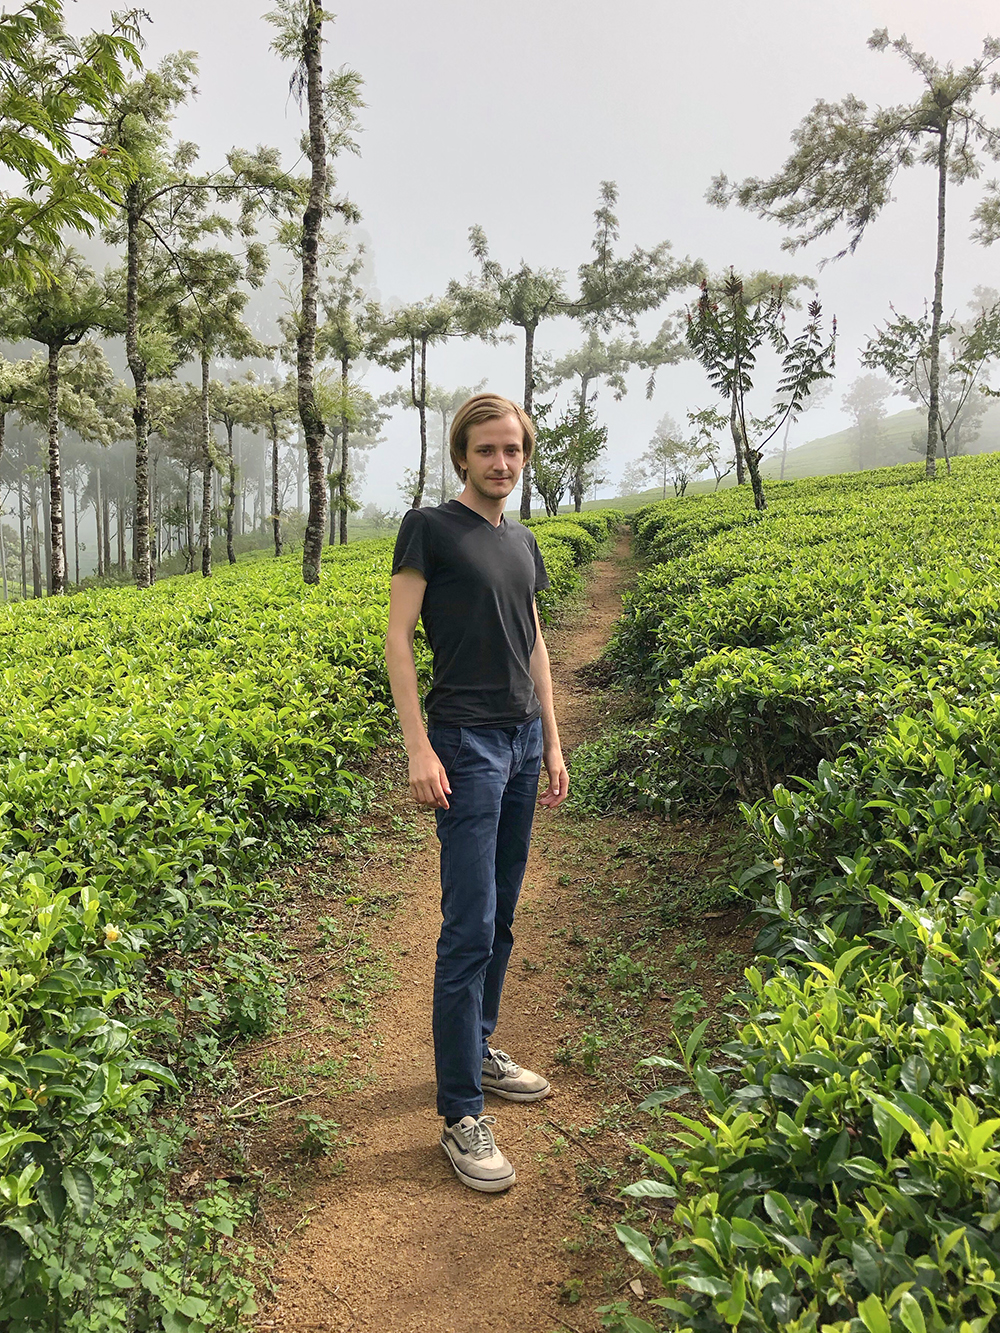 До поездки в эту страну я ни разу не был на чайных плантациях